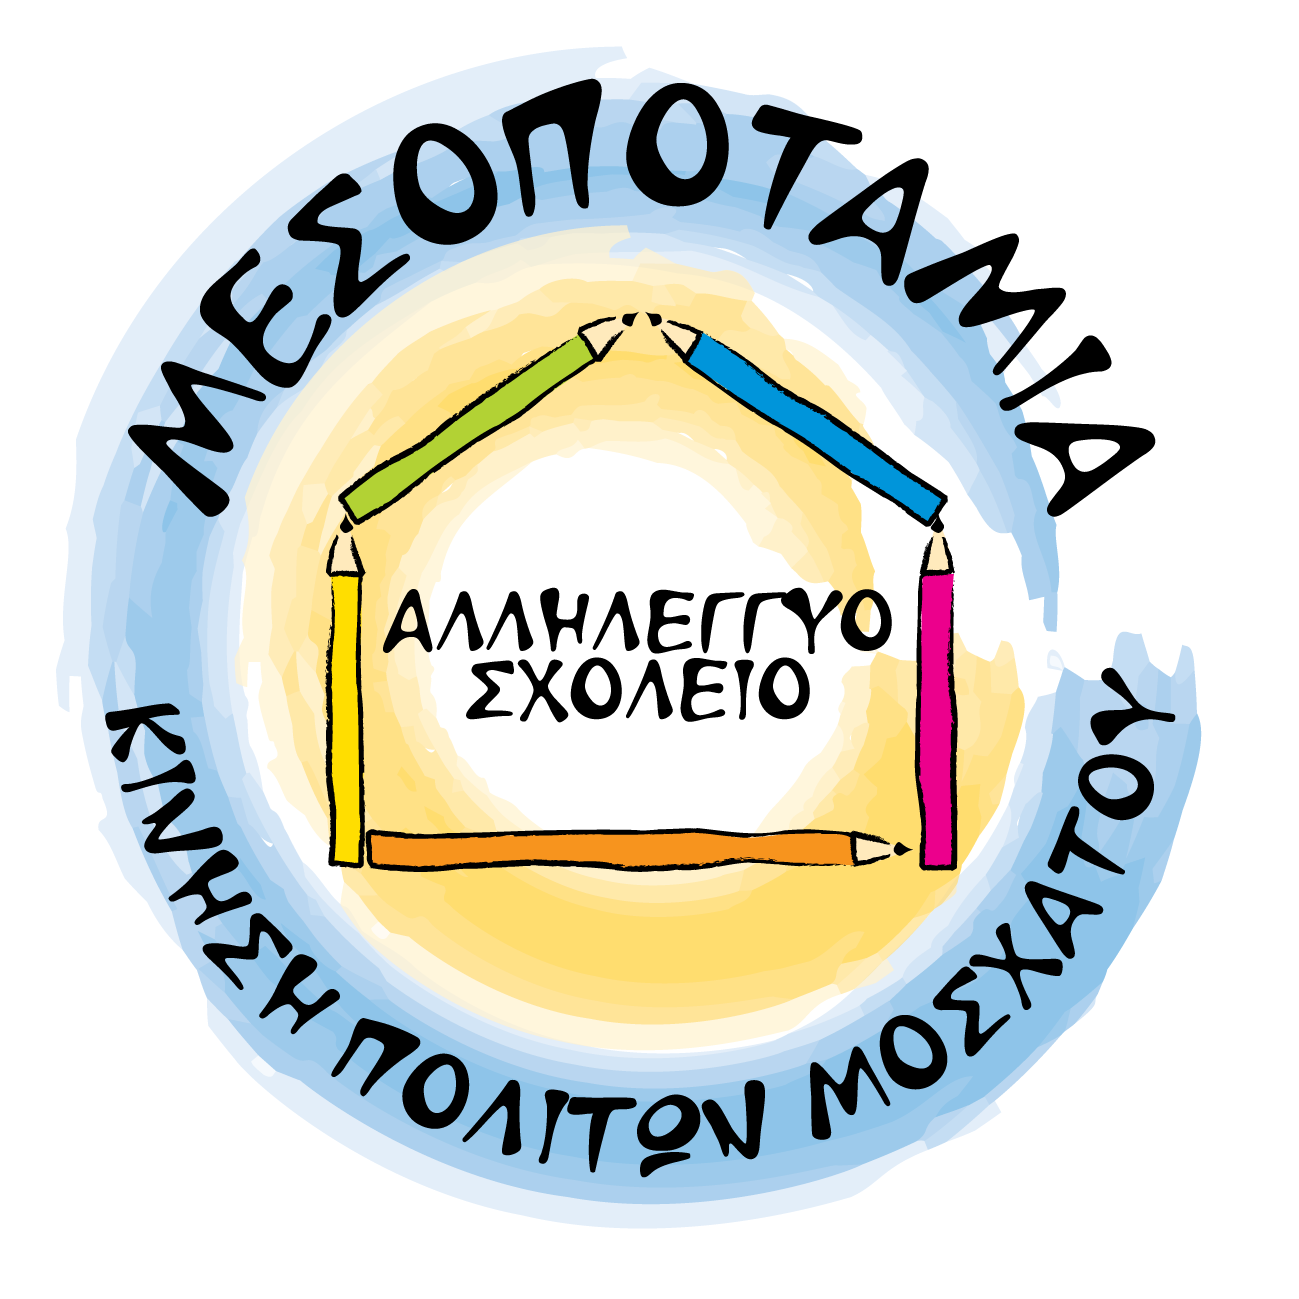 Αλληλέγγυο Σχολείο Μεσοποταμίας | User login logo